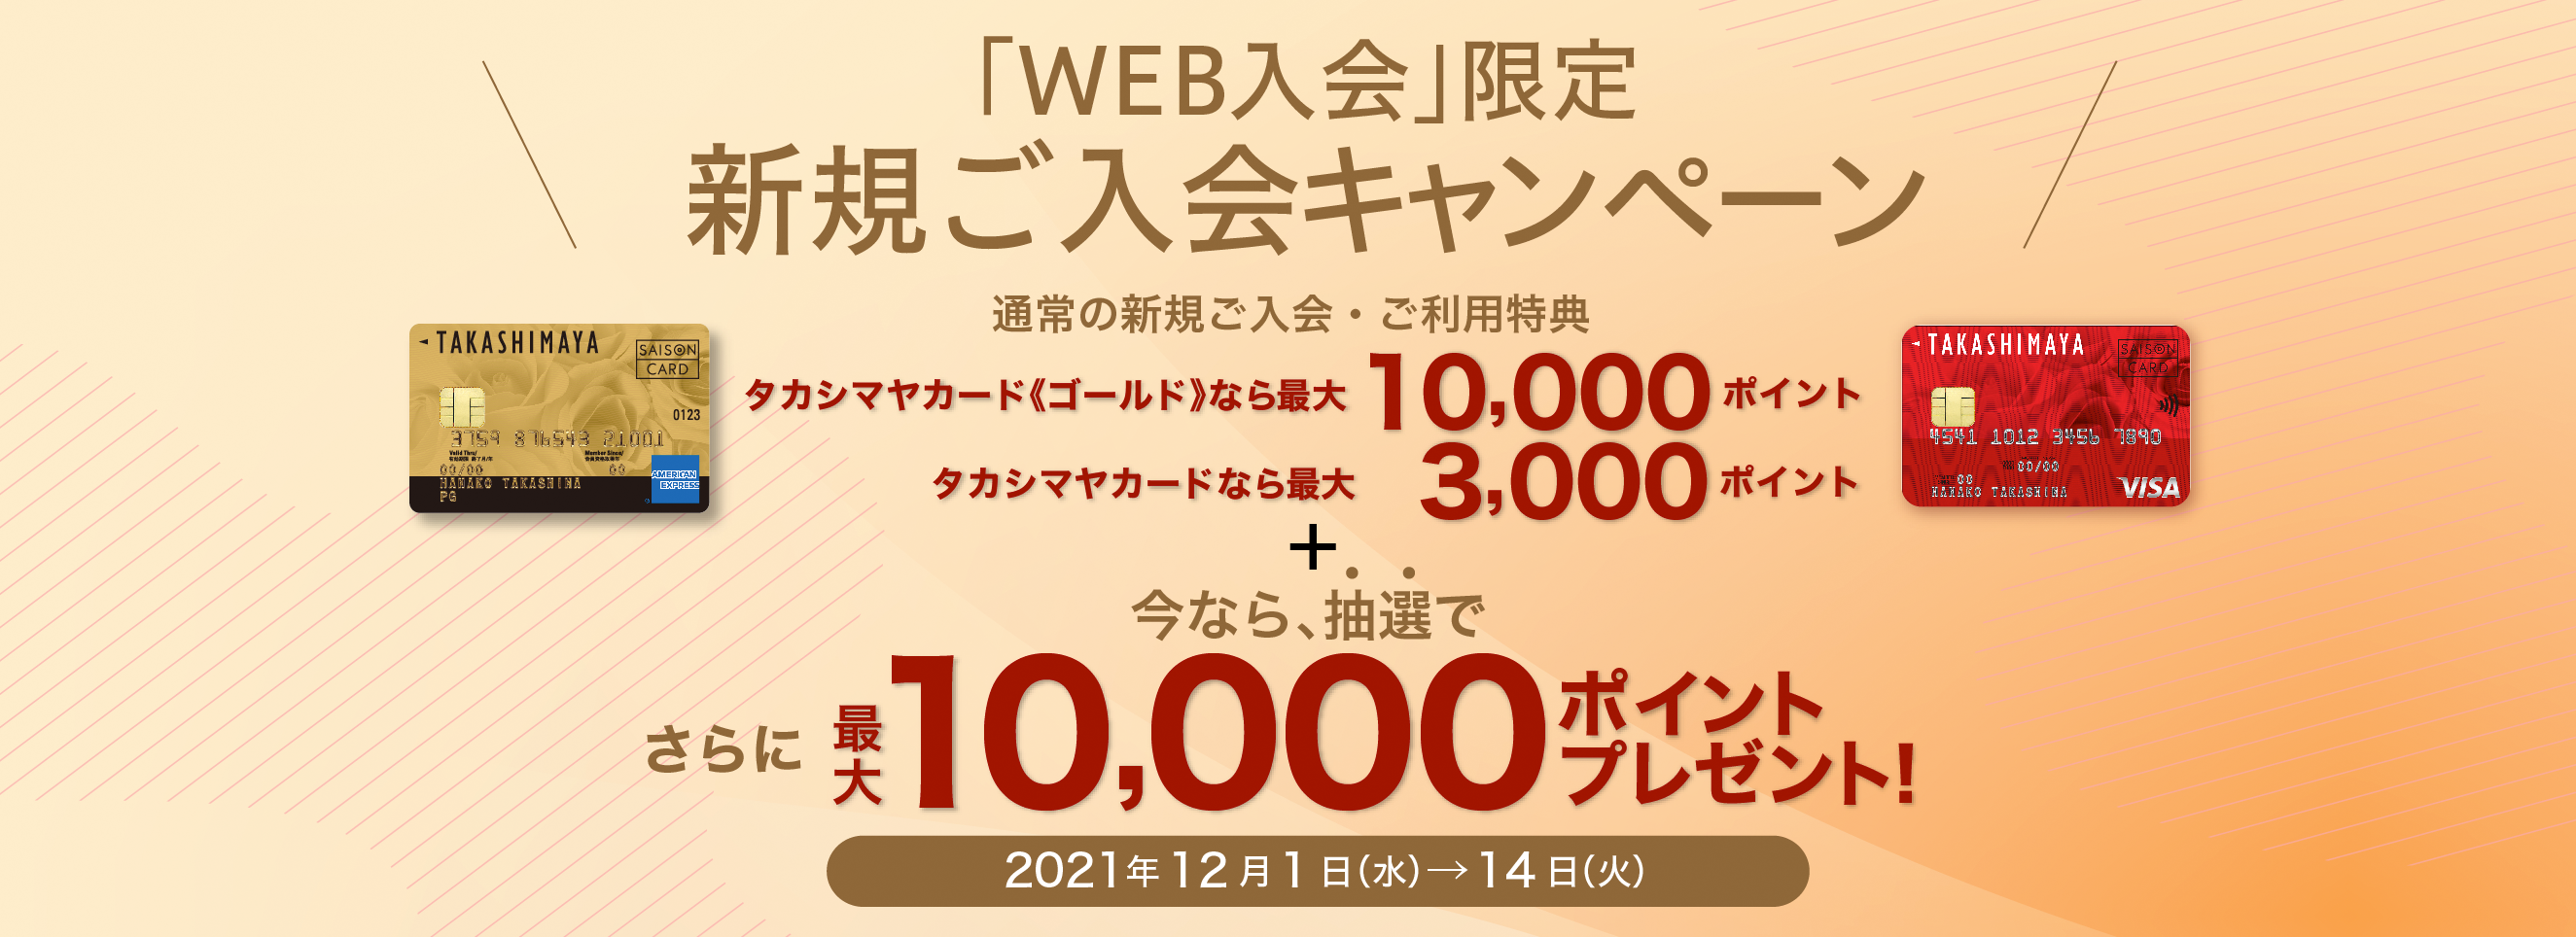 「WEB入会」限定 新規ご入会キャンペーン 通常の新規ご入会・ご利用特典 タカシマヤカード《ゴールド》なら最大10,000ポイント タカシマヤカードなら最大 3,000ポイント 今なら、抽選で さらに、最大10,000ポイントプレゼント！ 2021年12月1日（水）→14日（火）